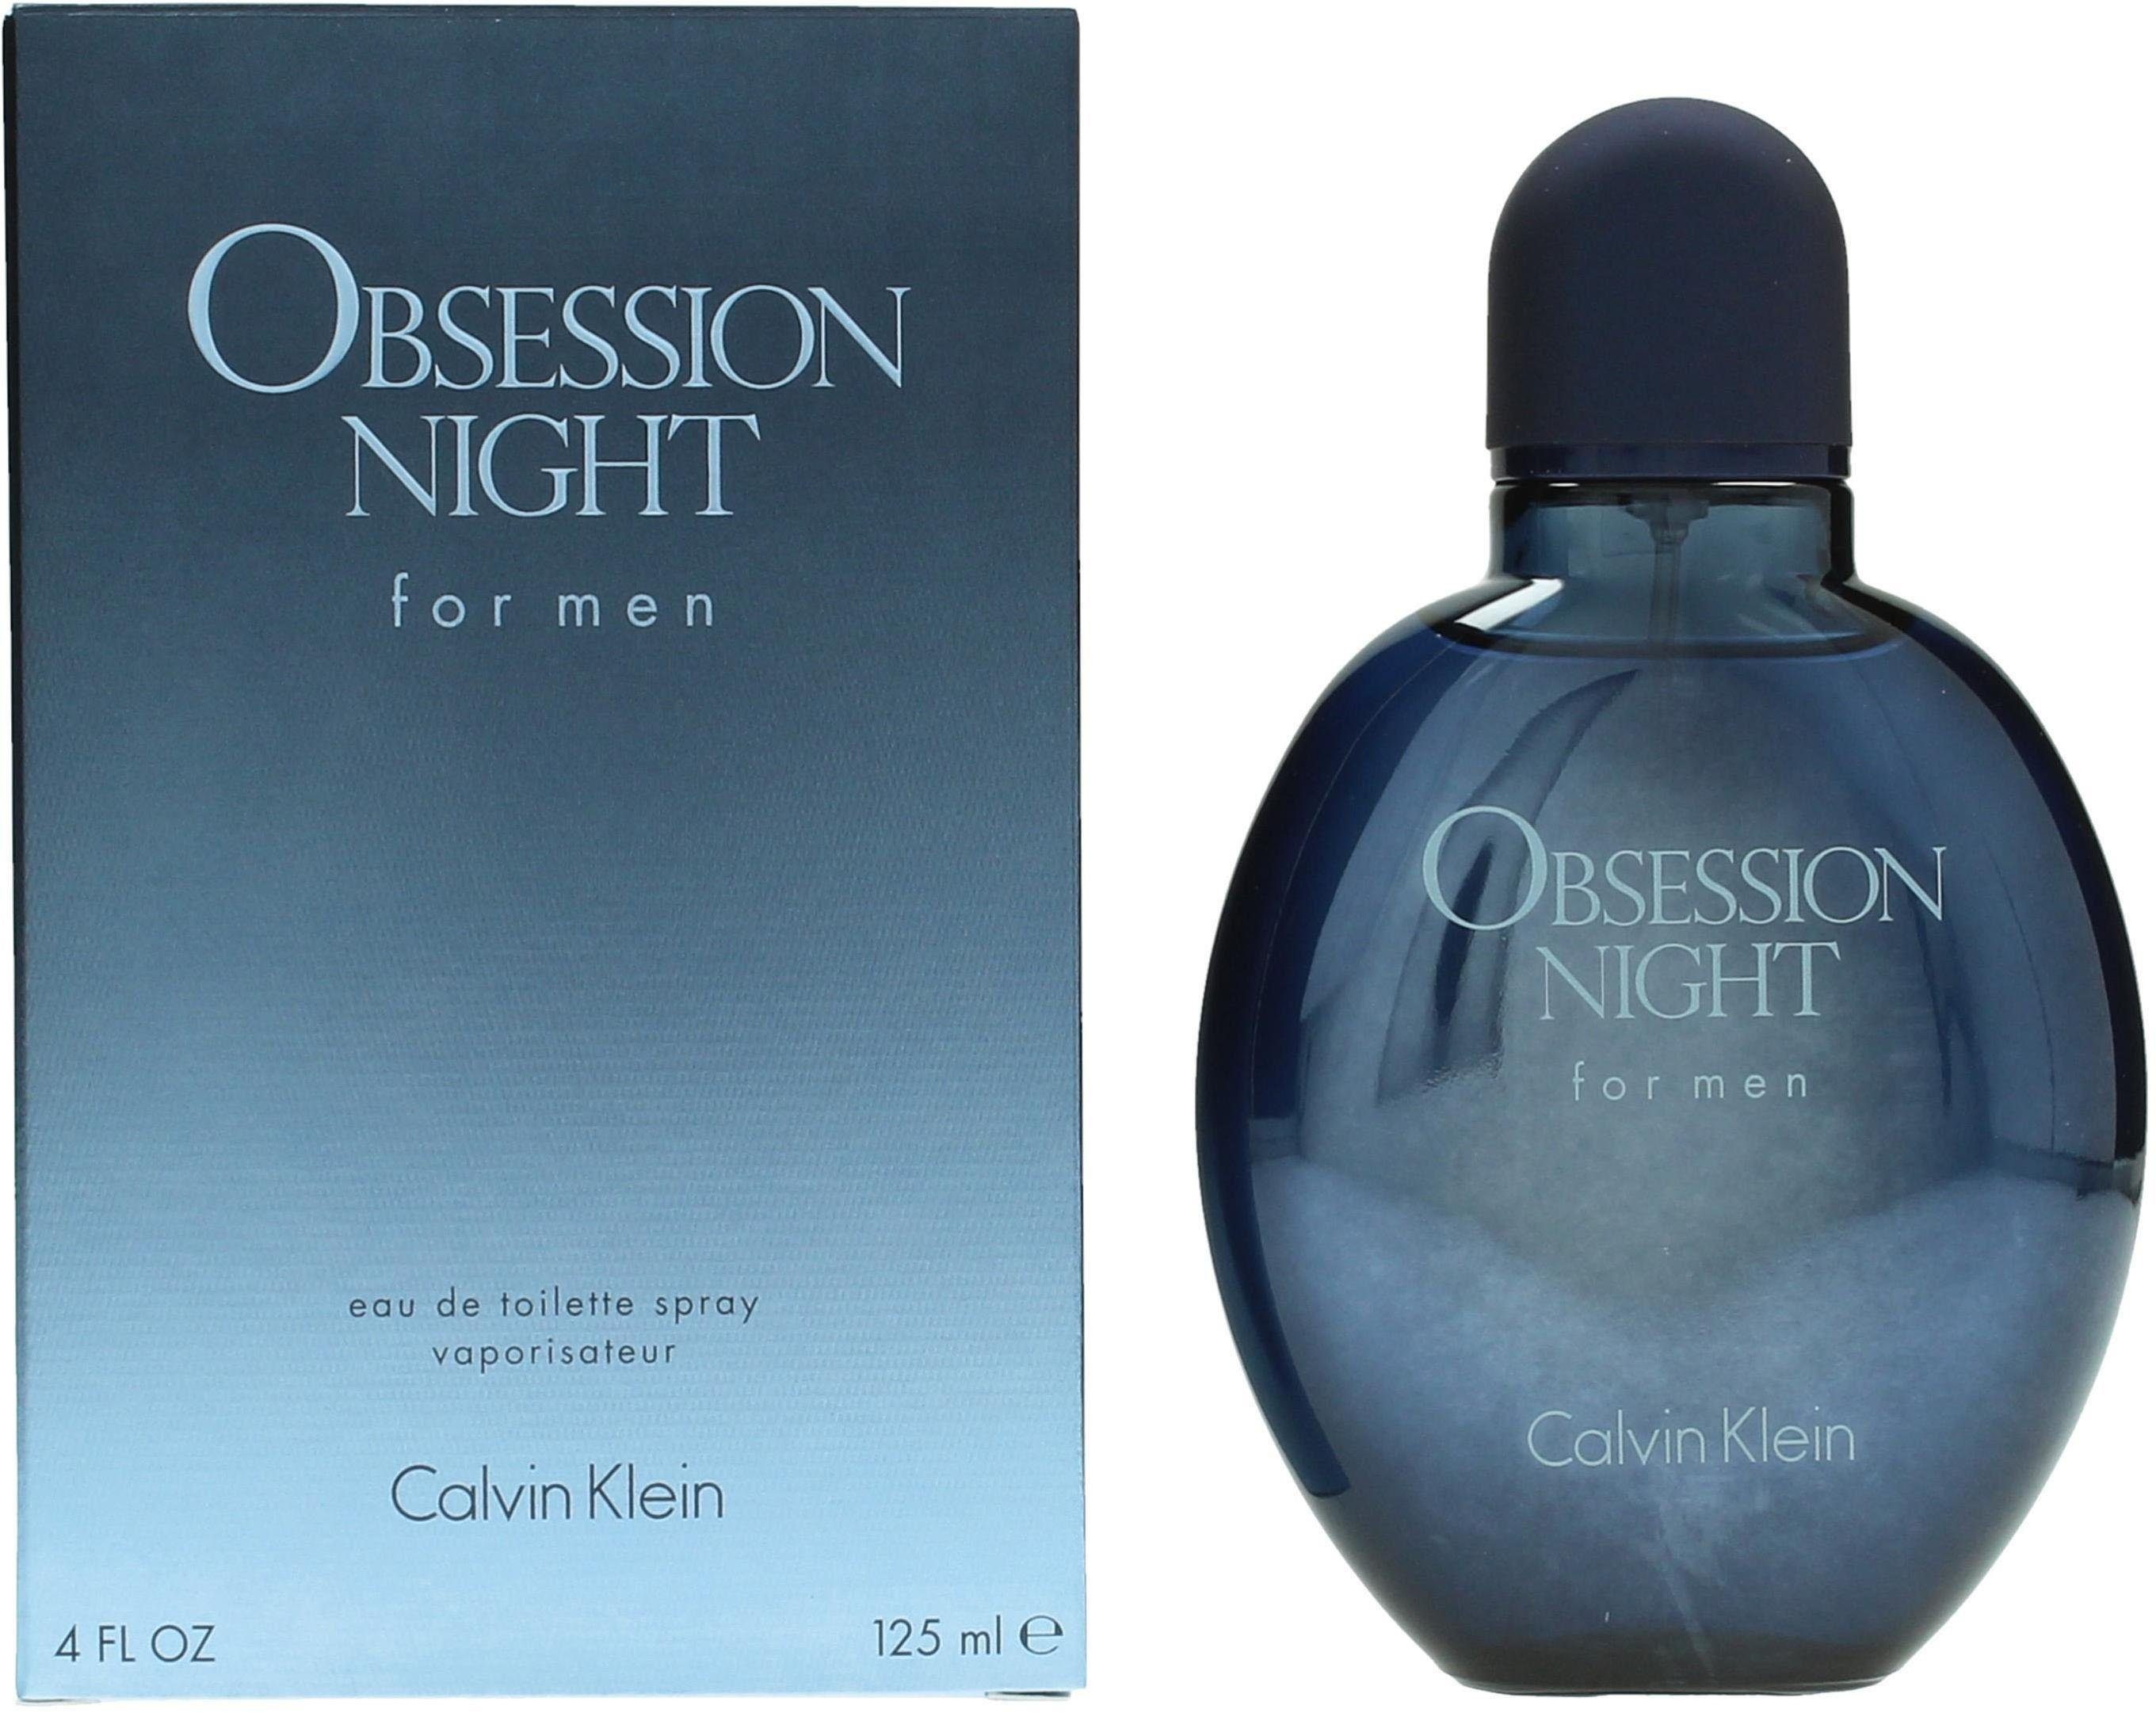 Night Men de Klein Toilette for Obsession Calvin Eau